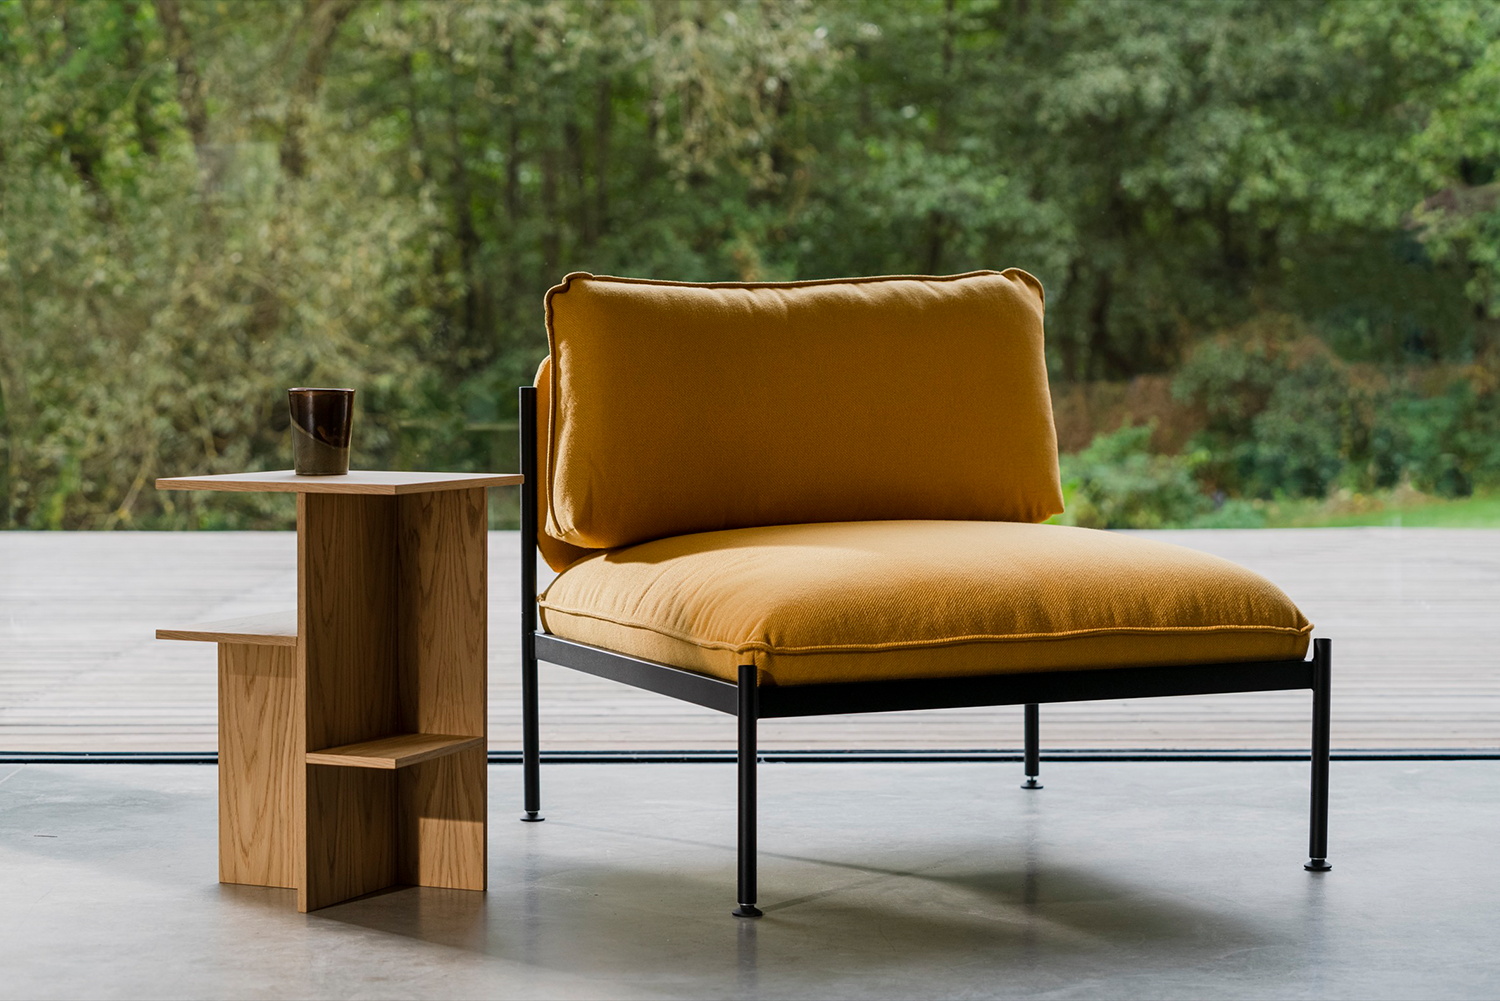 Toom Modular Stuhl in Yellow Ochre präsentiert im Onlineshop von KAQTU Design AG. Sessel ist von Noo.ma